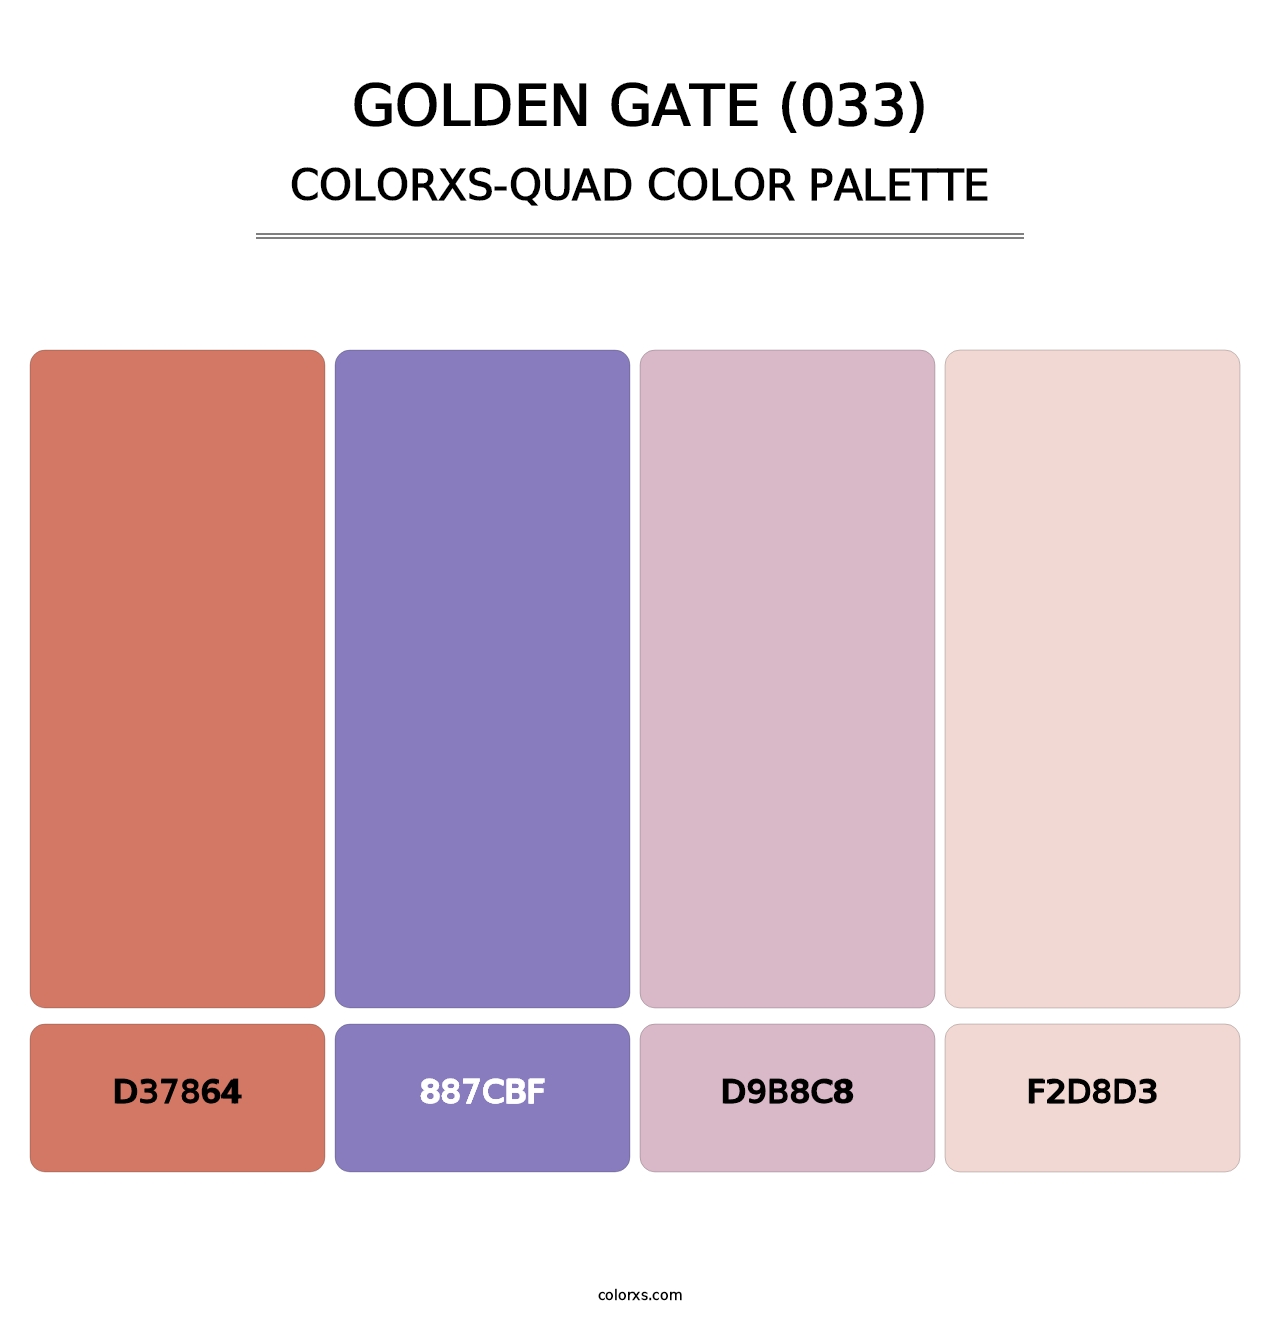 Golden Gate (033) - Colorxs Quad Palette